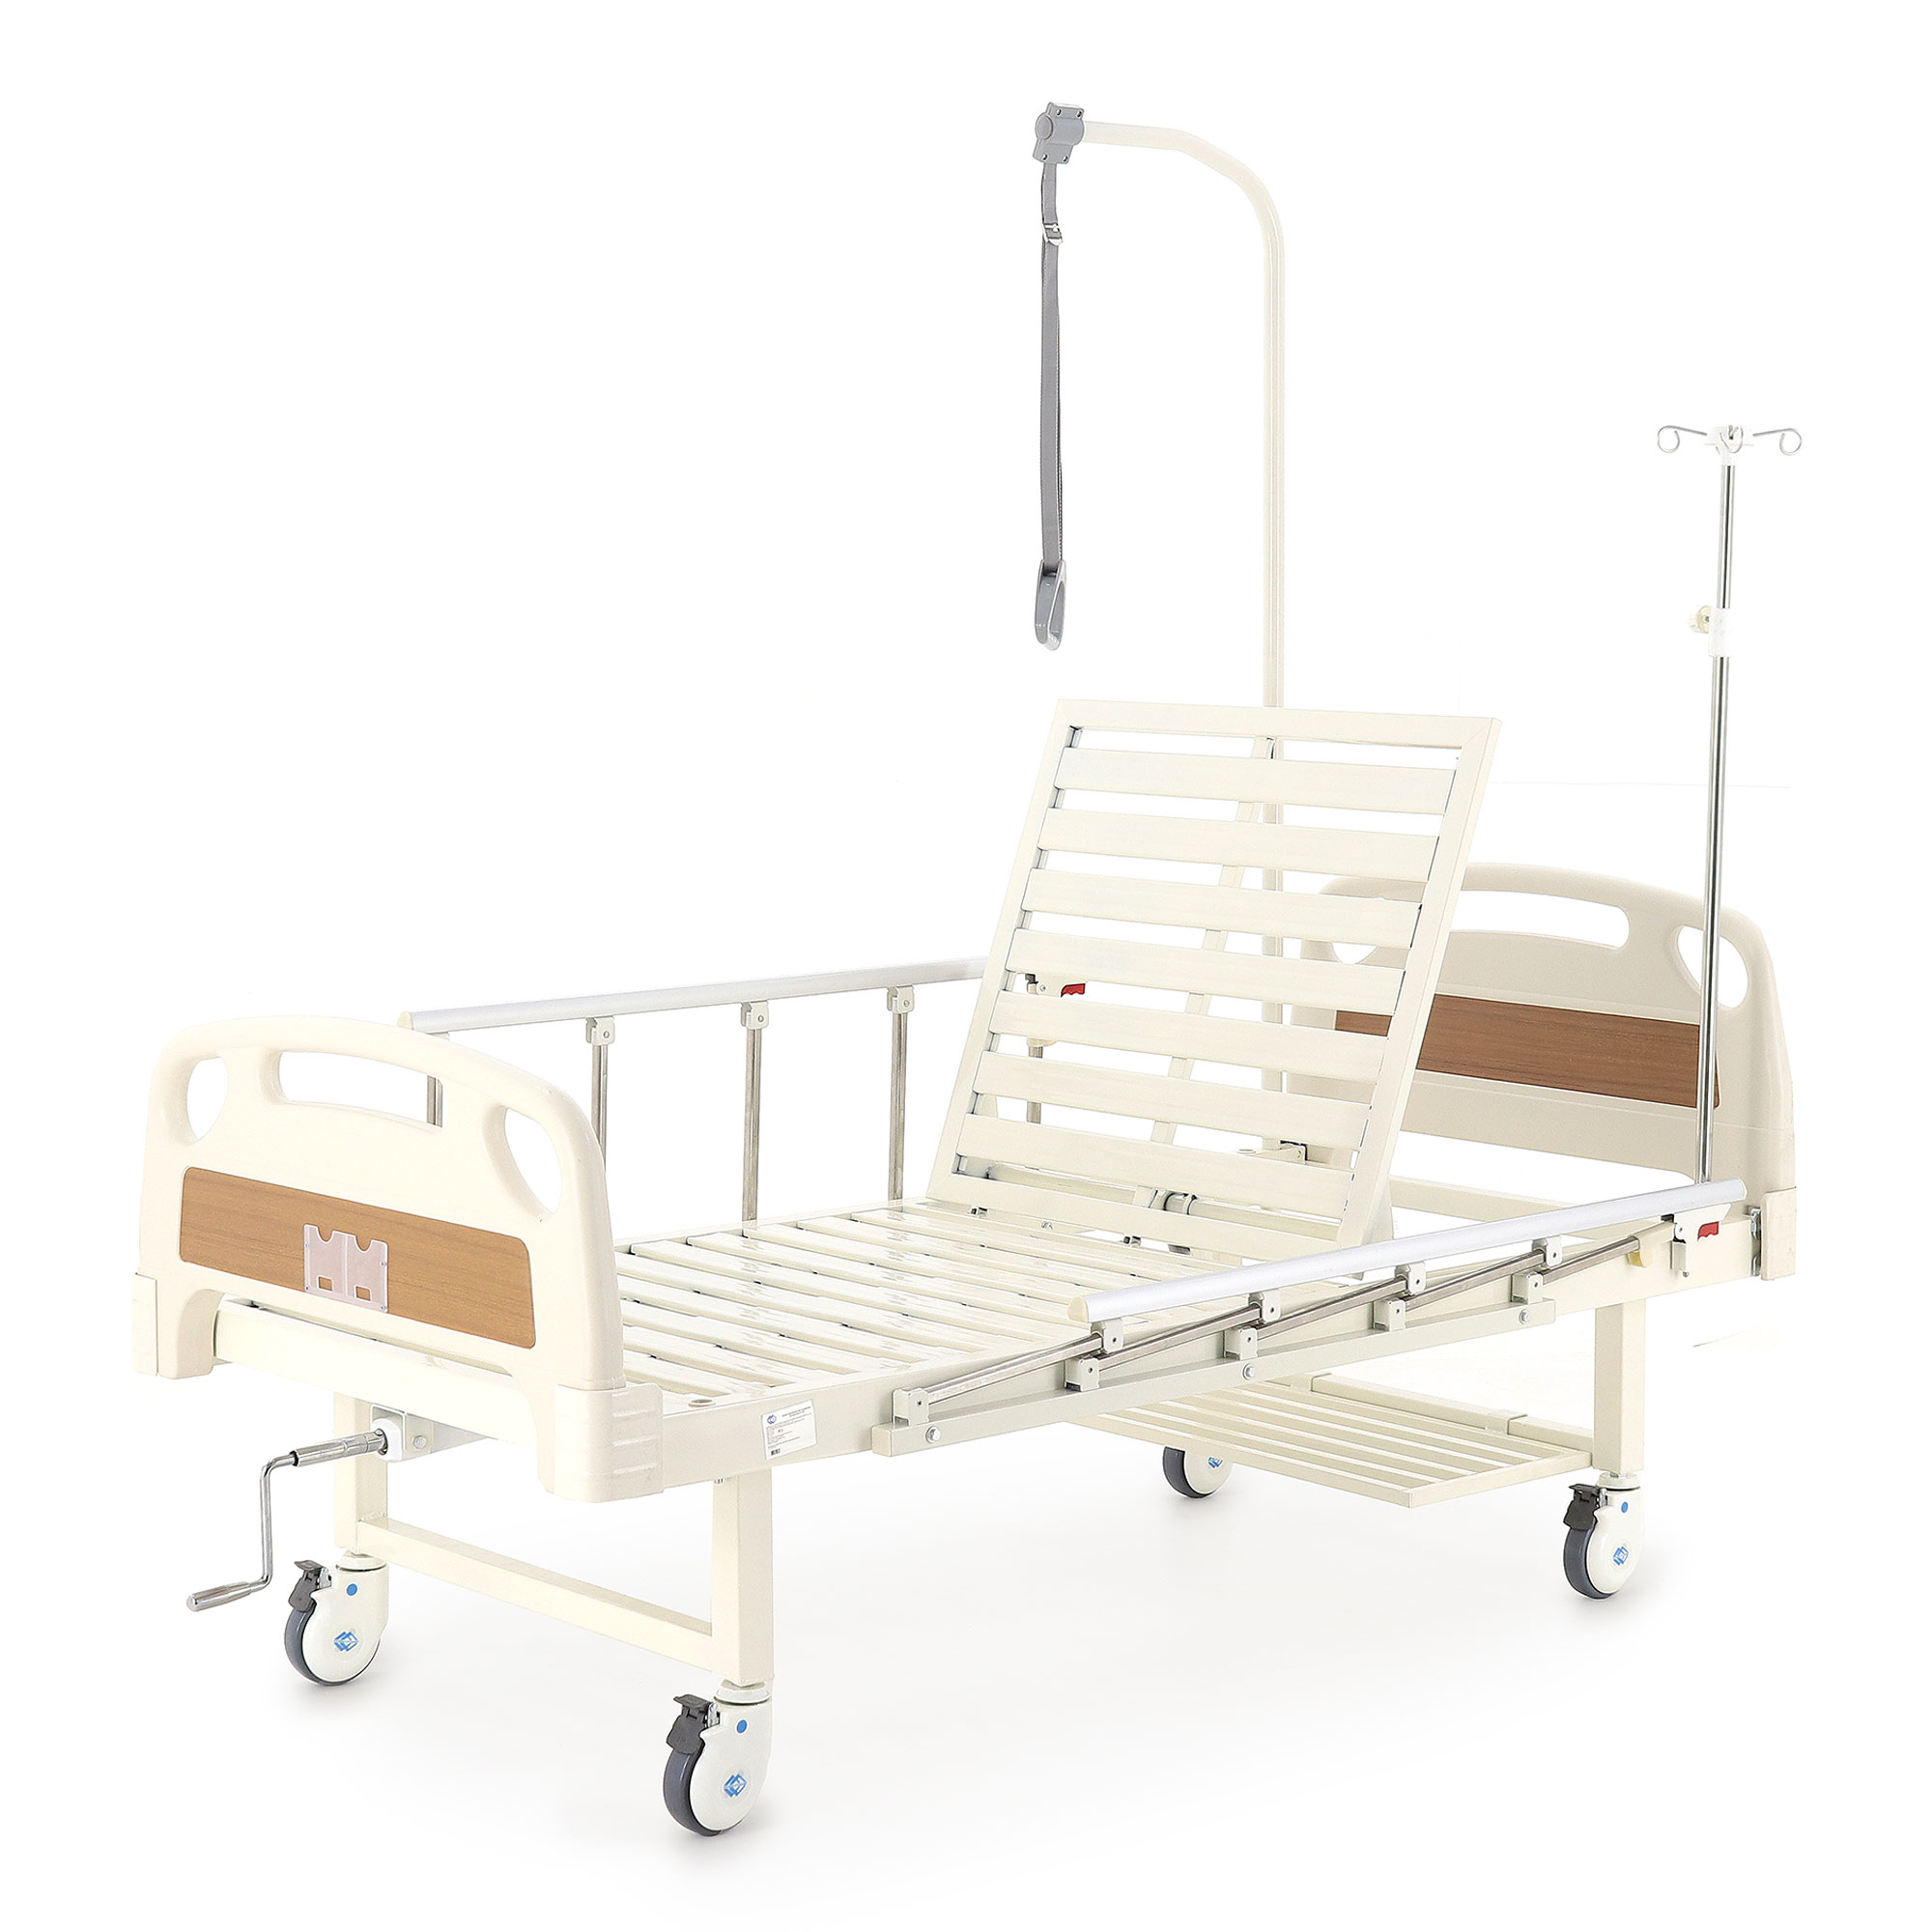 Медицинская кровать функциональная с туалетным устройством yg 6 mm 91н